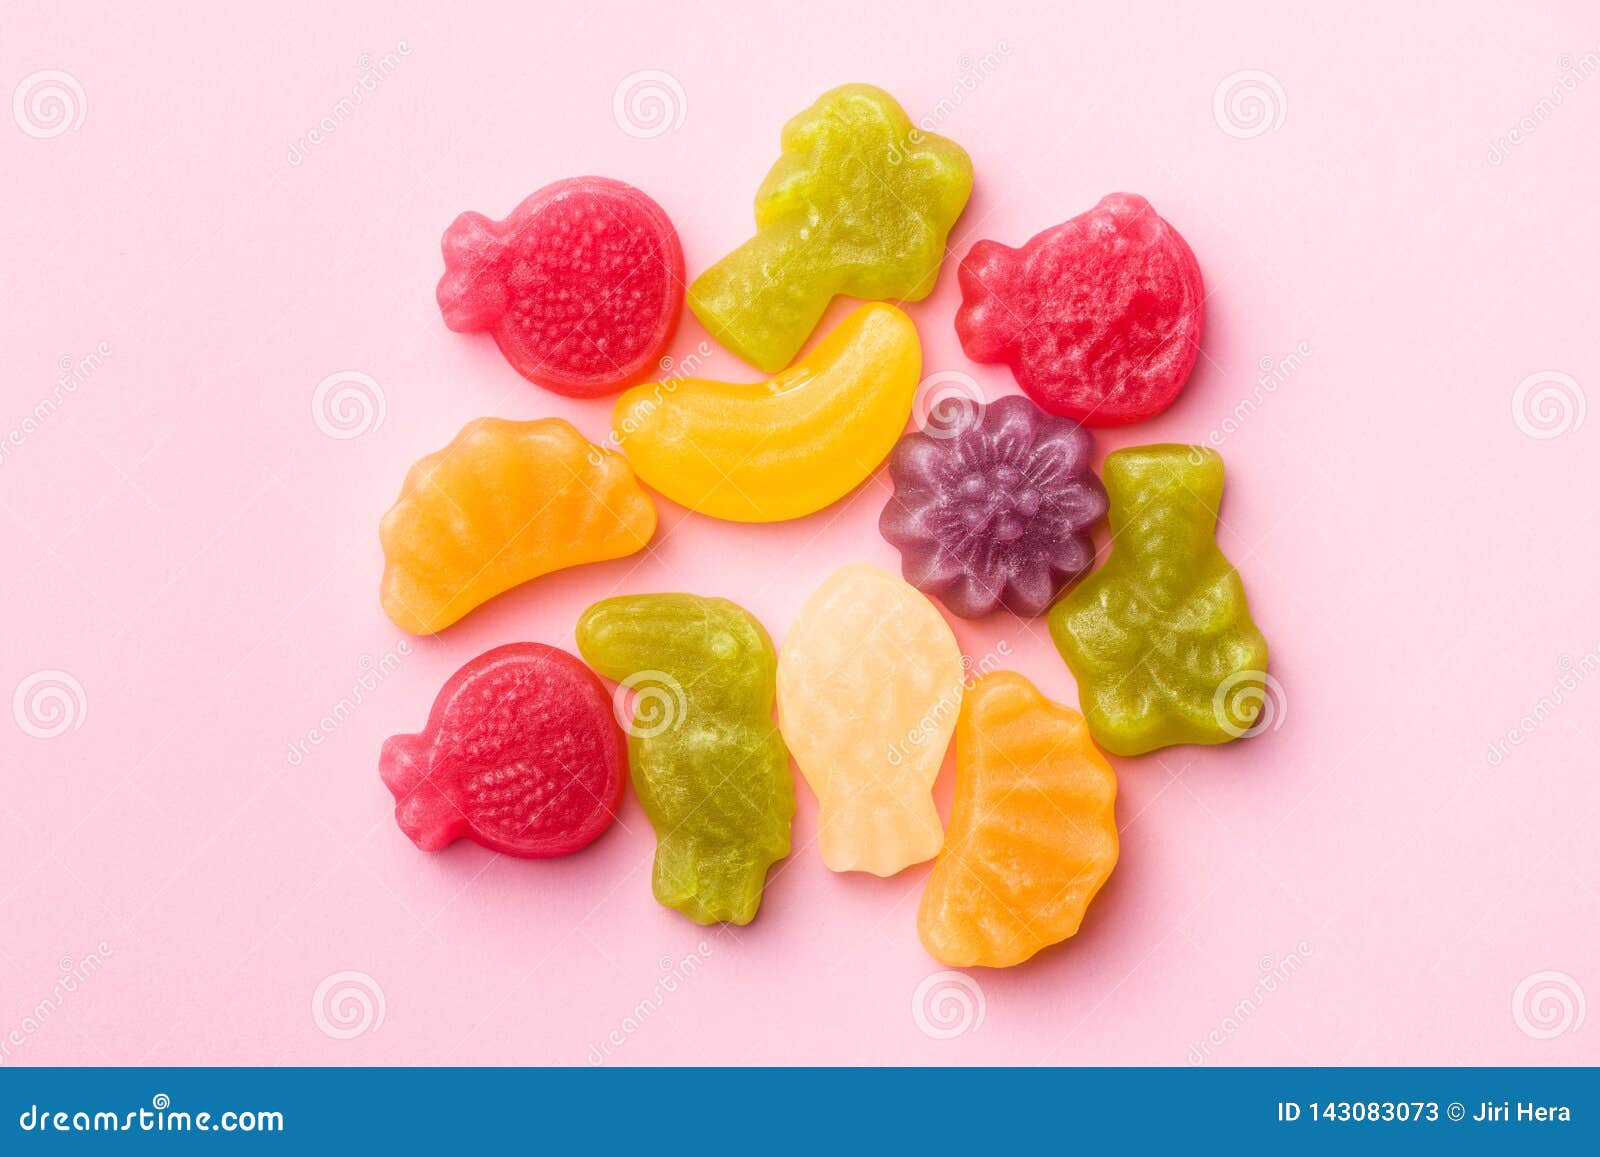 Fruit jelly candies stock image. Image of indulgence - 143083073